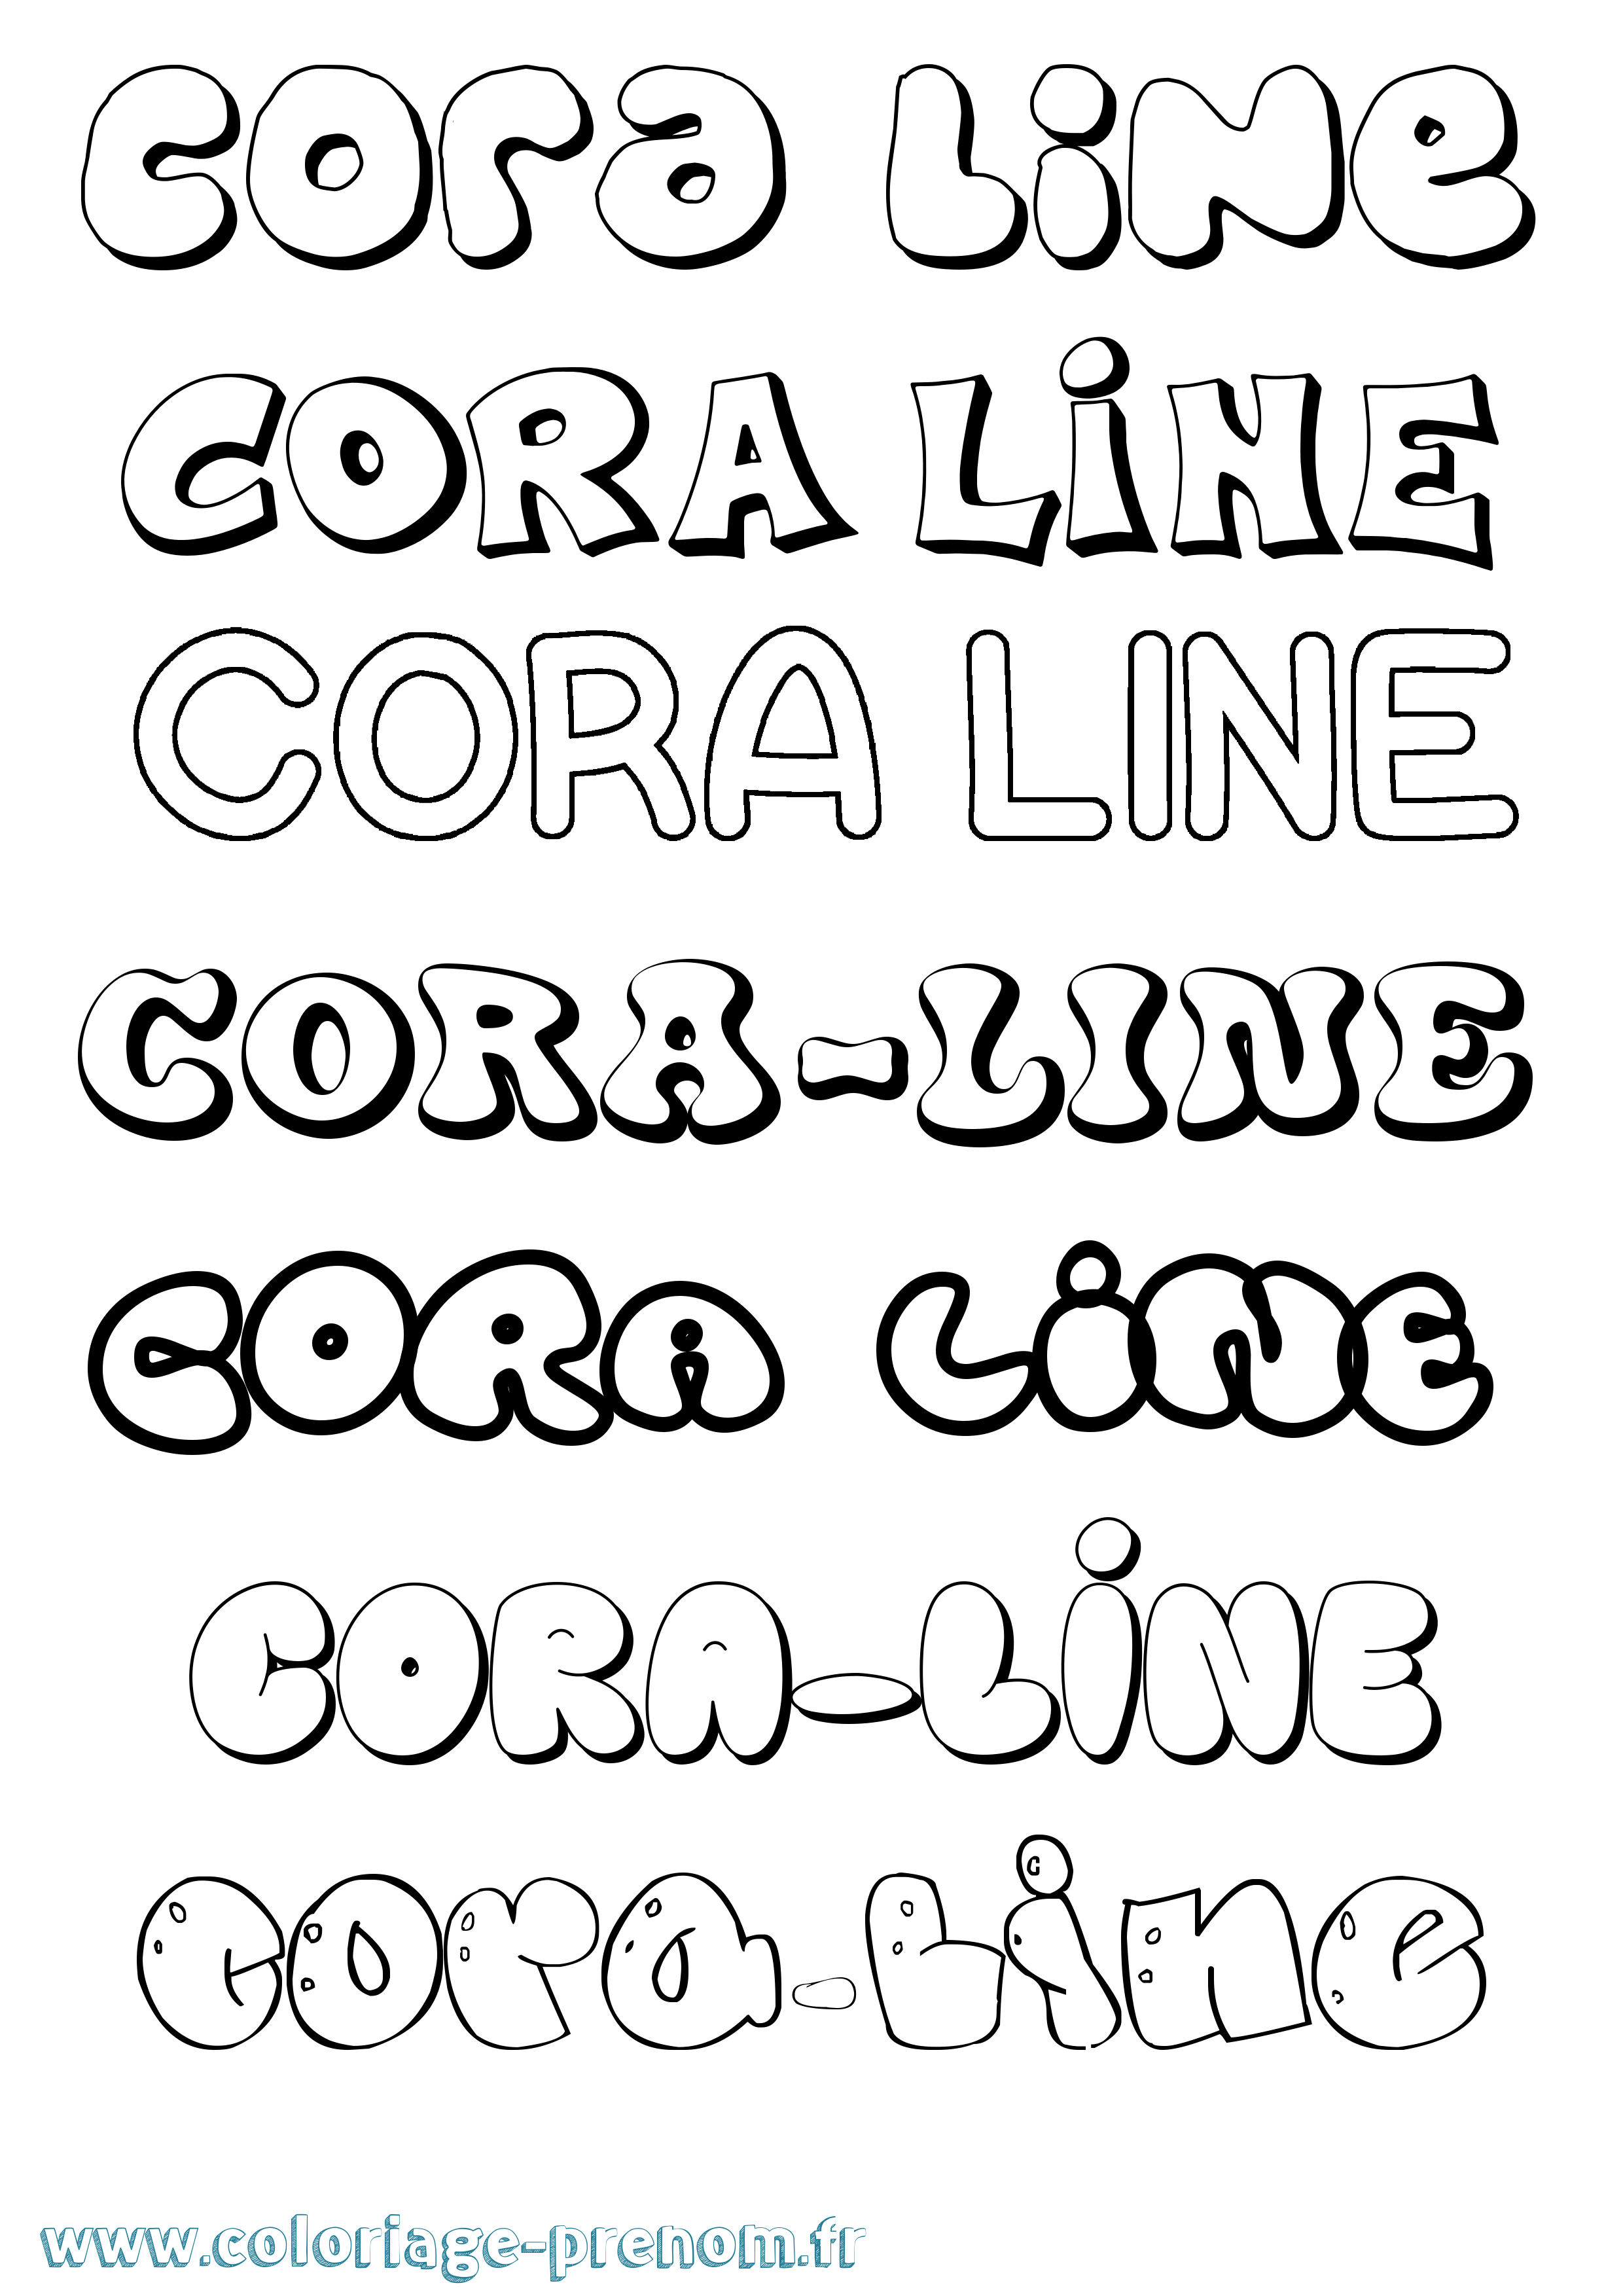 Coloriage prénom Cora-Line Bubble